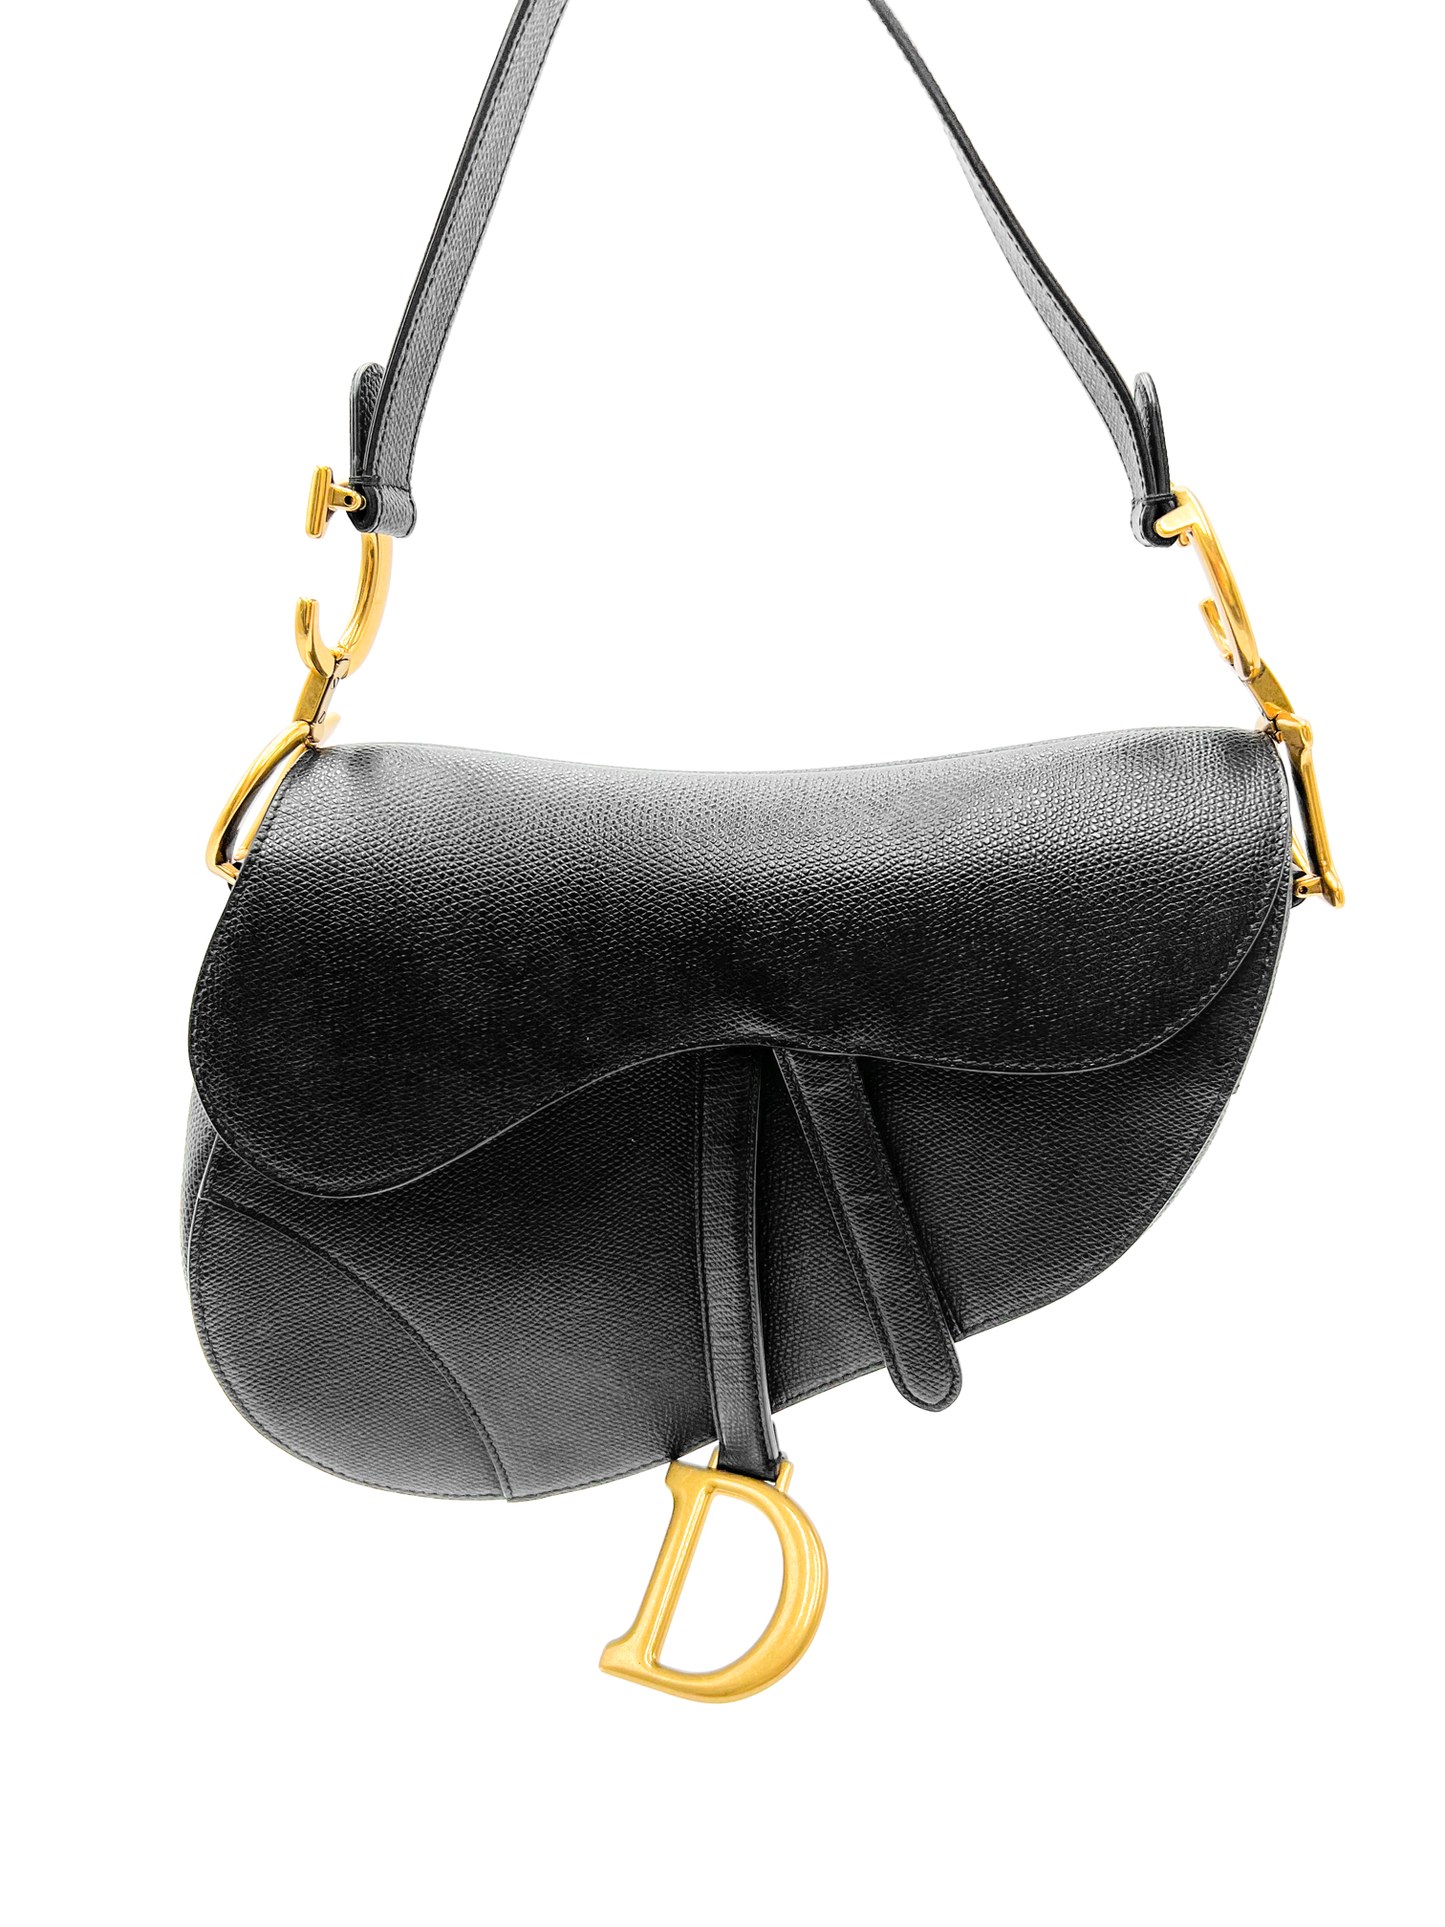 Dior Saddle Bag Black with Gold Hardware